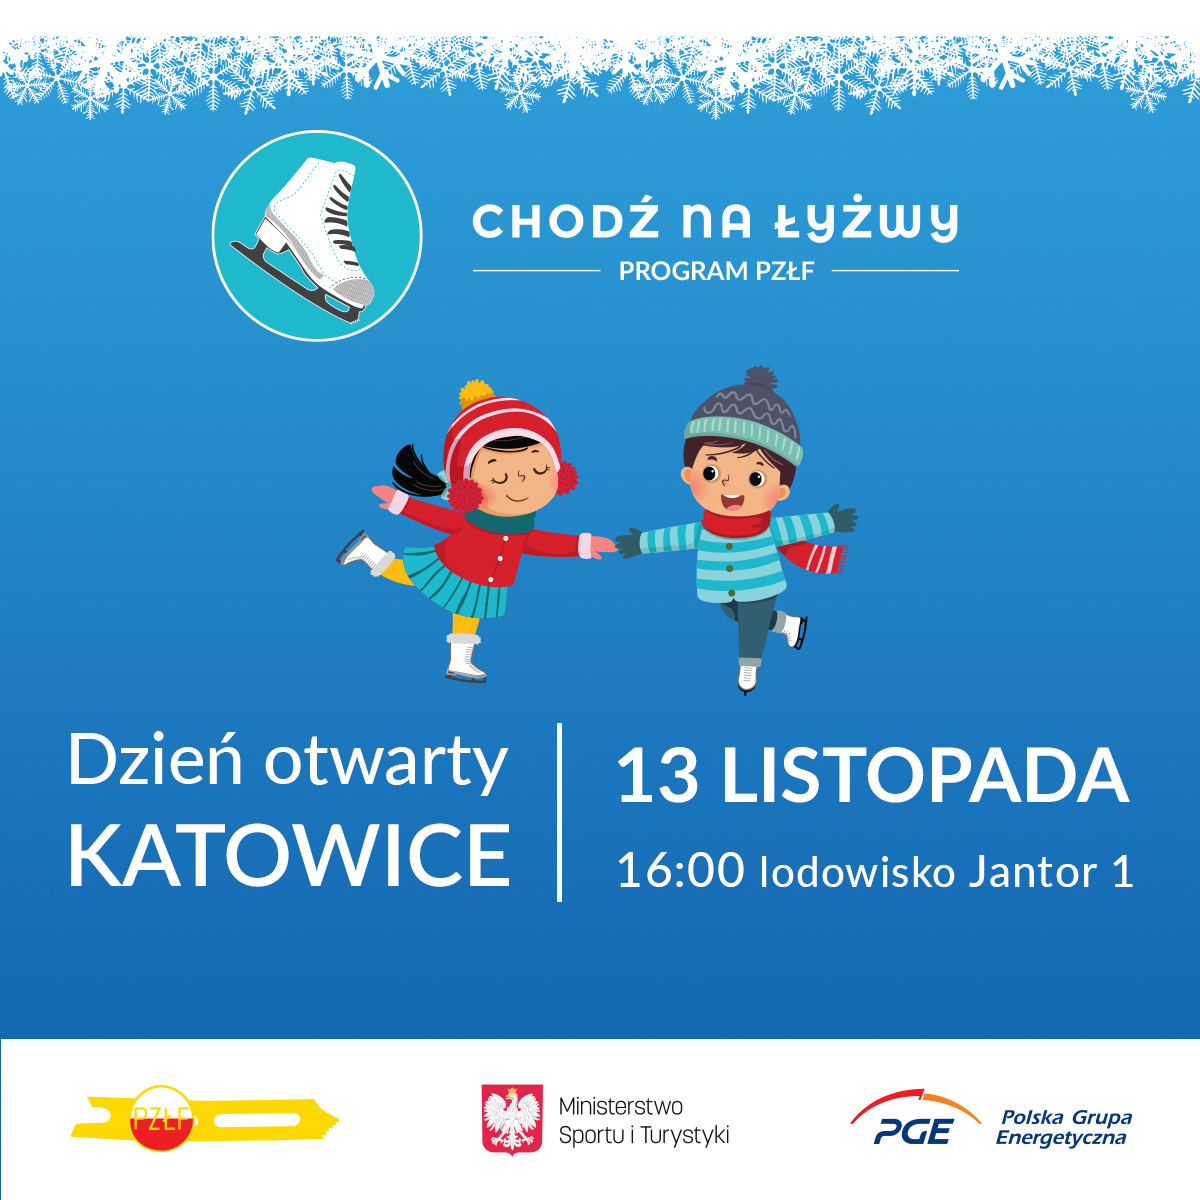 Kolejny dzień otwarty i piknik rodzinny programu “Chodź na Łyżwy” - tym razem widzimy się w Katowicach już 13 listopada!